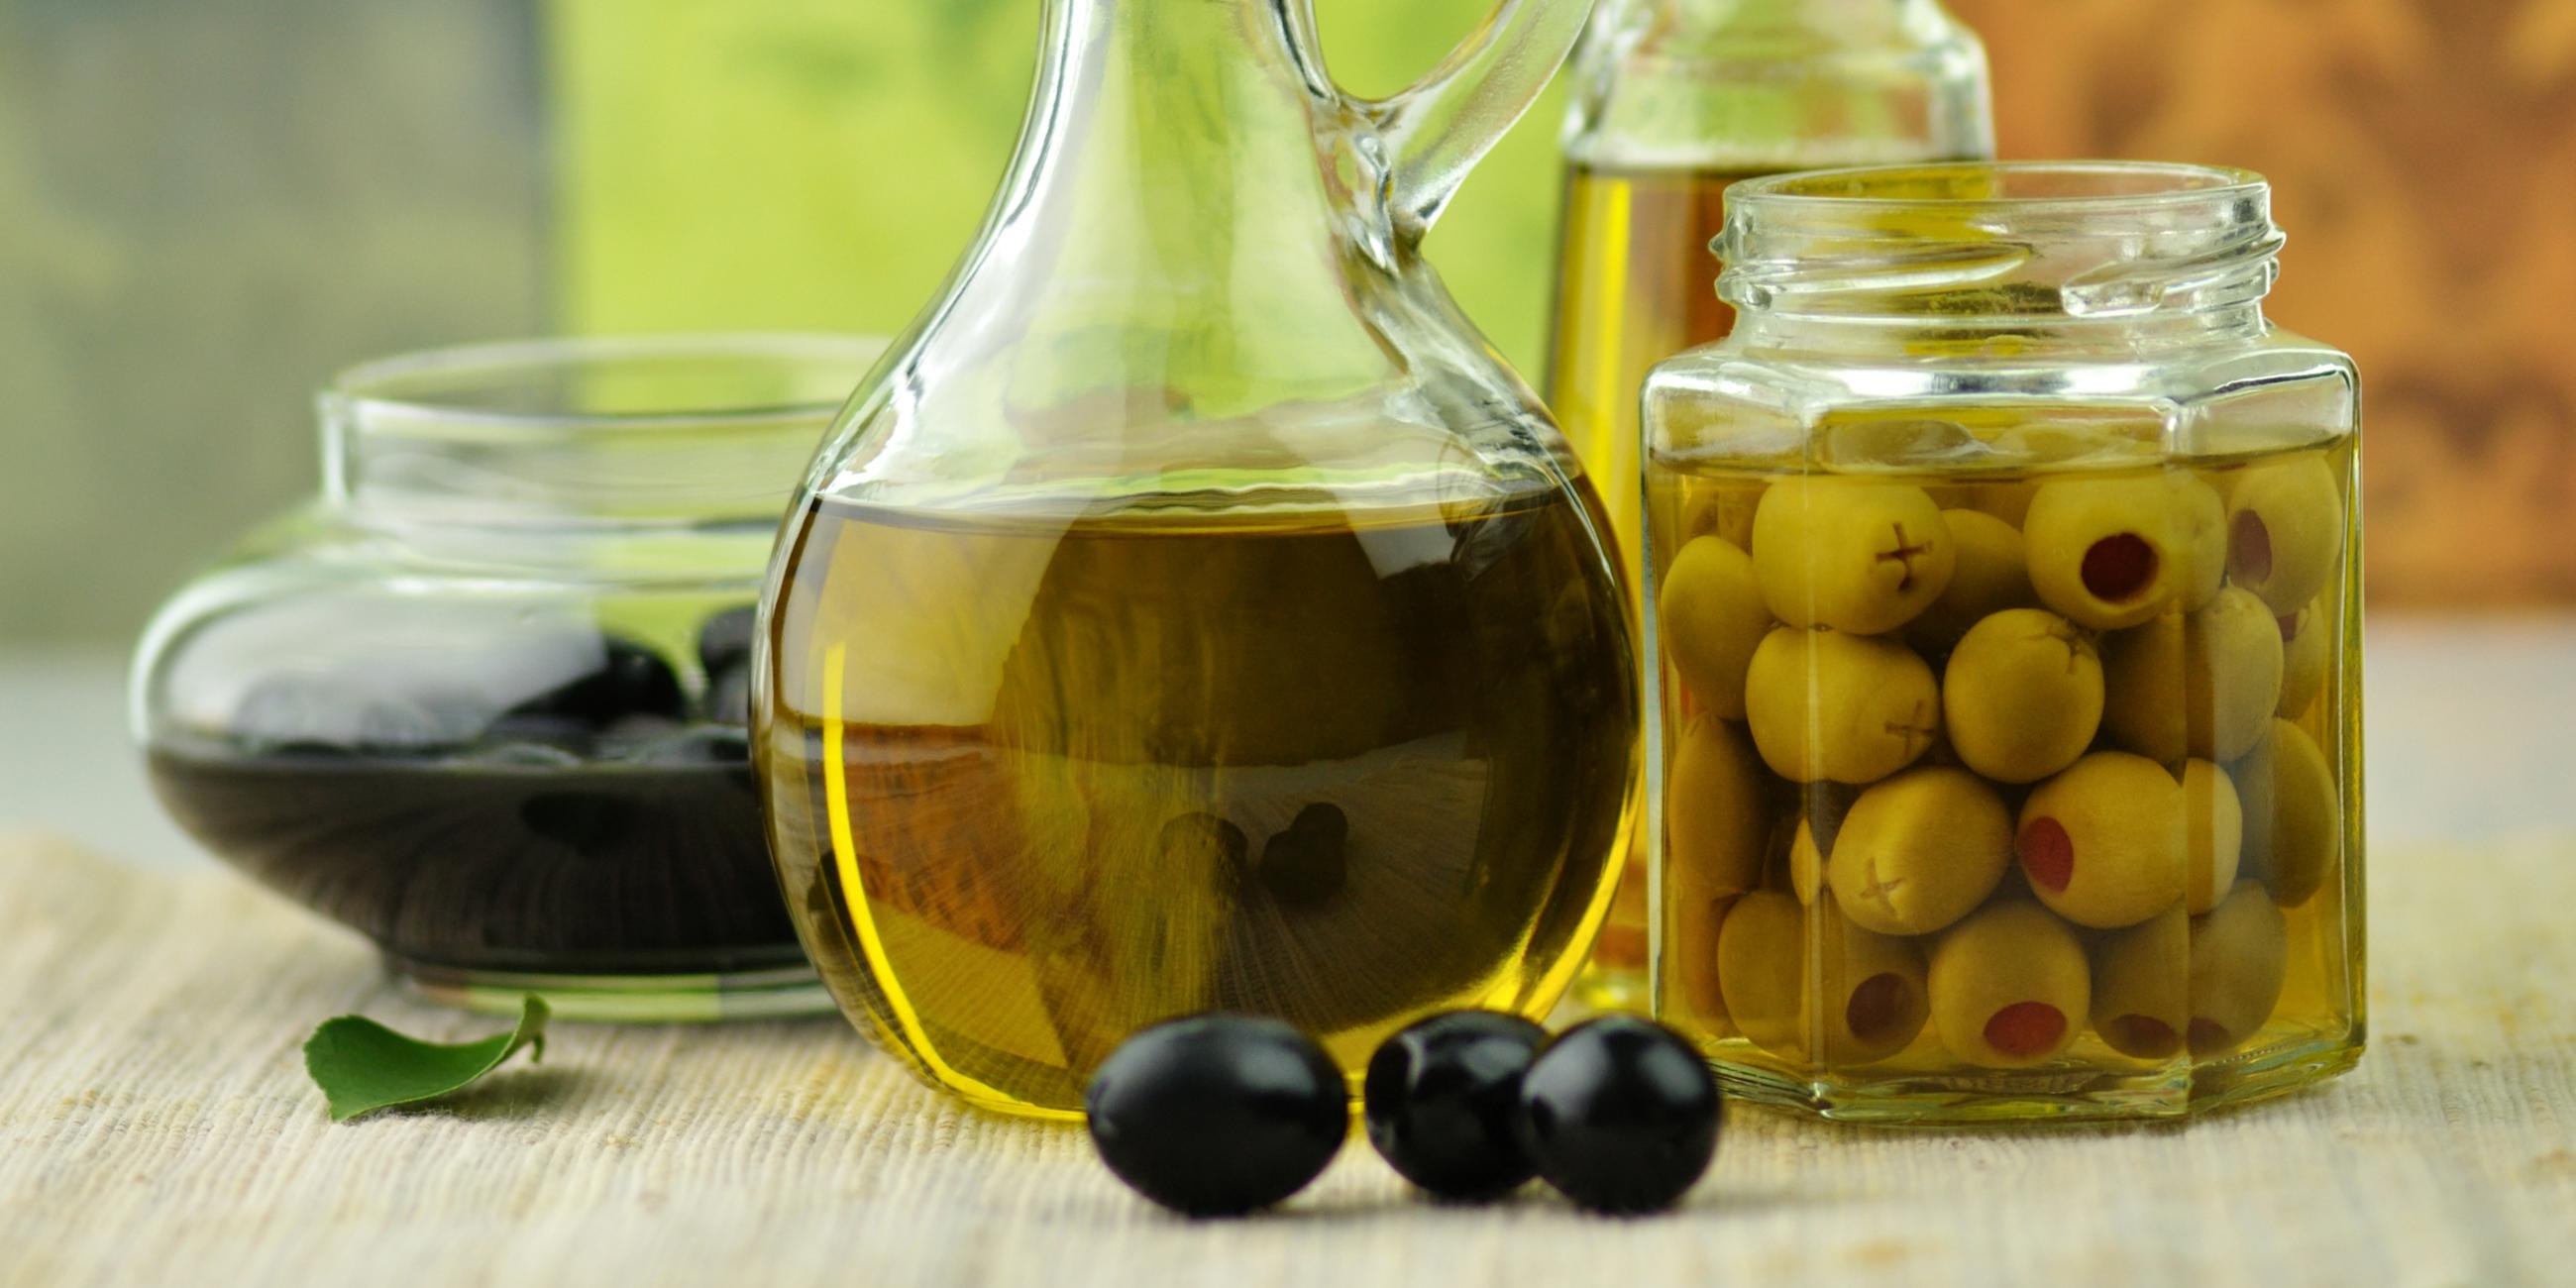 Olivenöl in einer Karaffe steht in der Mitte. Daneben steht ein Einmachglas mit Oliven und weitere Glasgefäße.